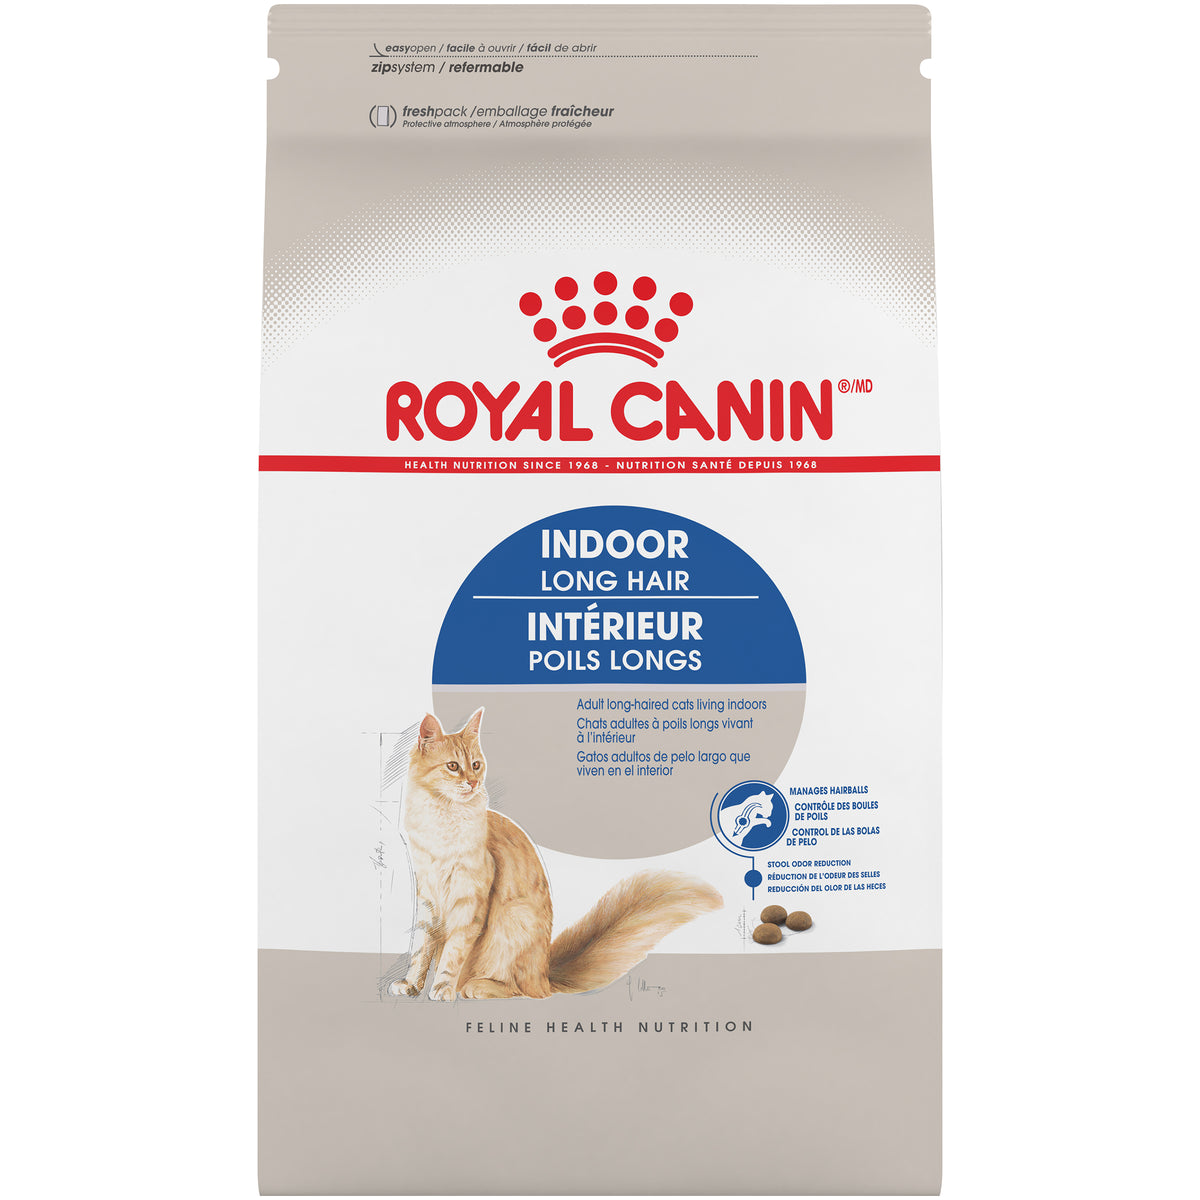 Royal Canin® Feline Health Nutrition™  Indoor Long Hair Dry Cat Food 6 lb